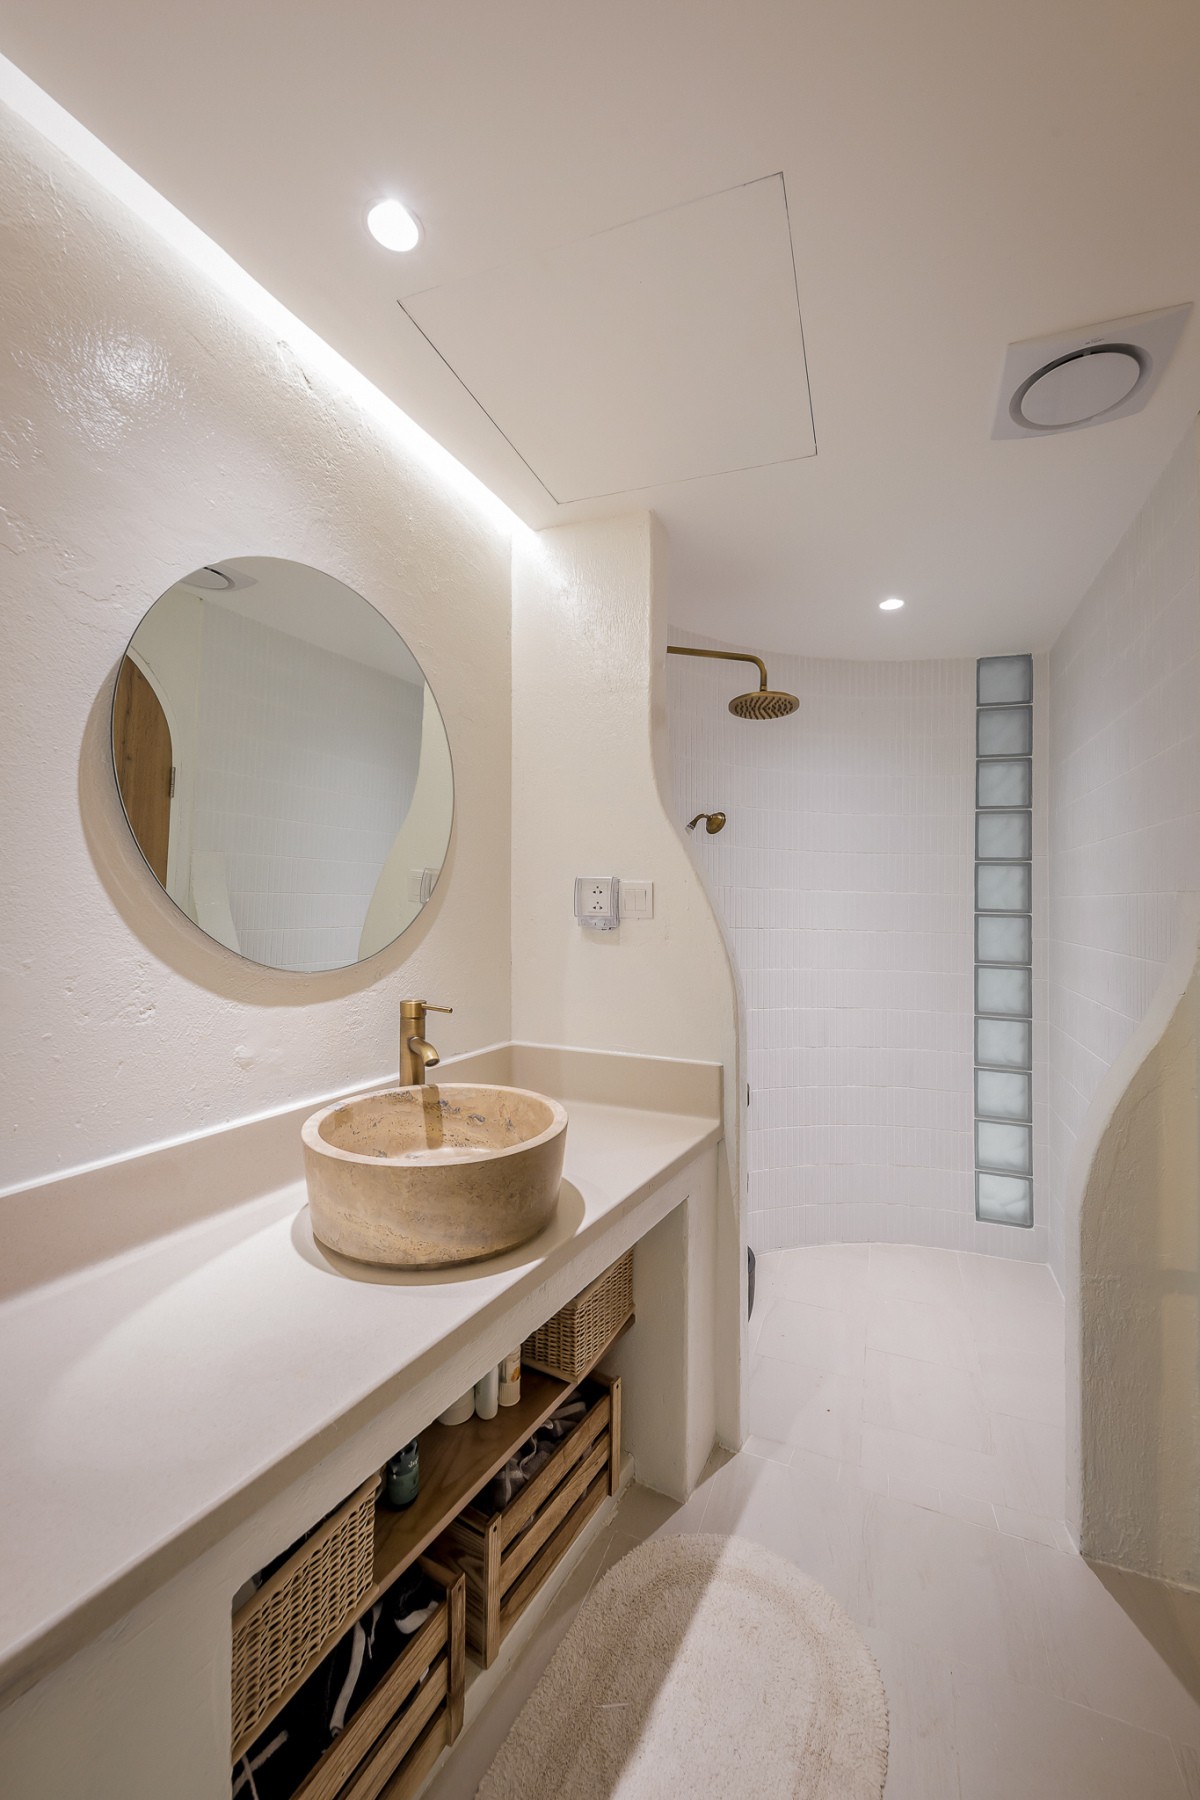 
Phòng tắm gọn gàng, với màu trắng làm tông chủ đạo giúp cho không gian luôn sáng sủa, gọn gàng và rộng rãi hơn
